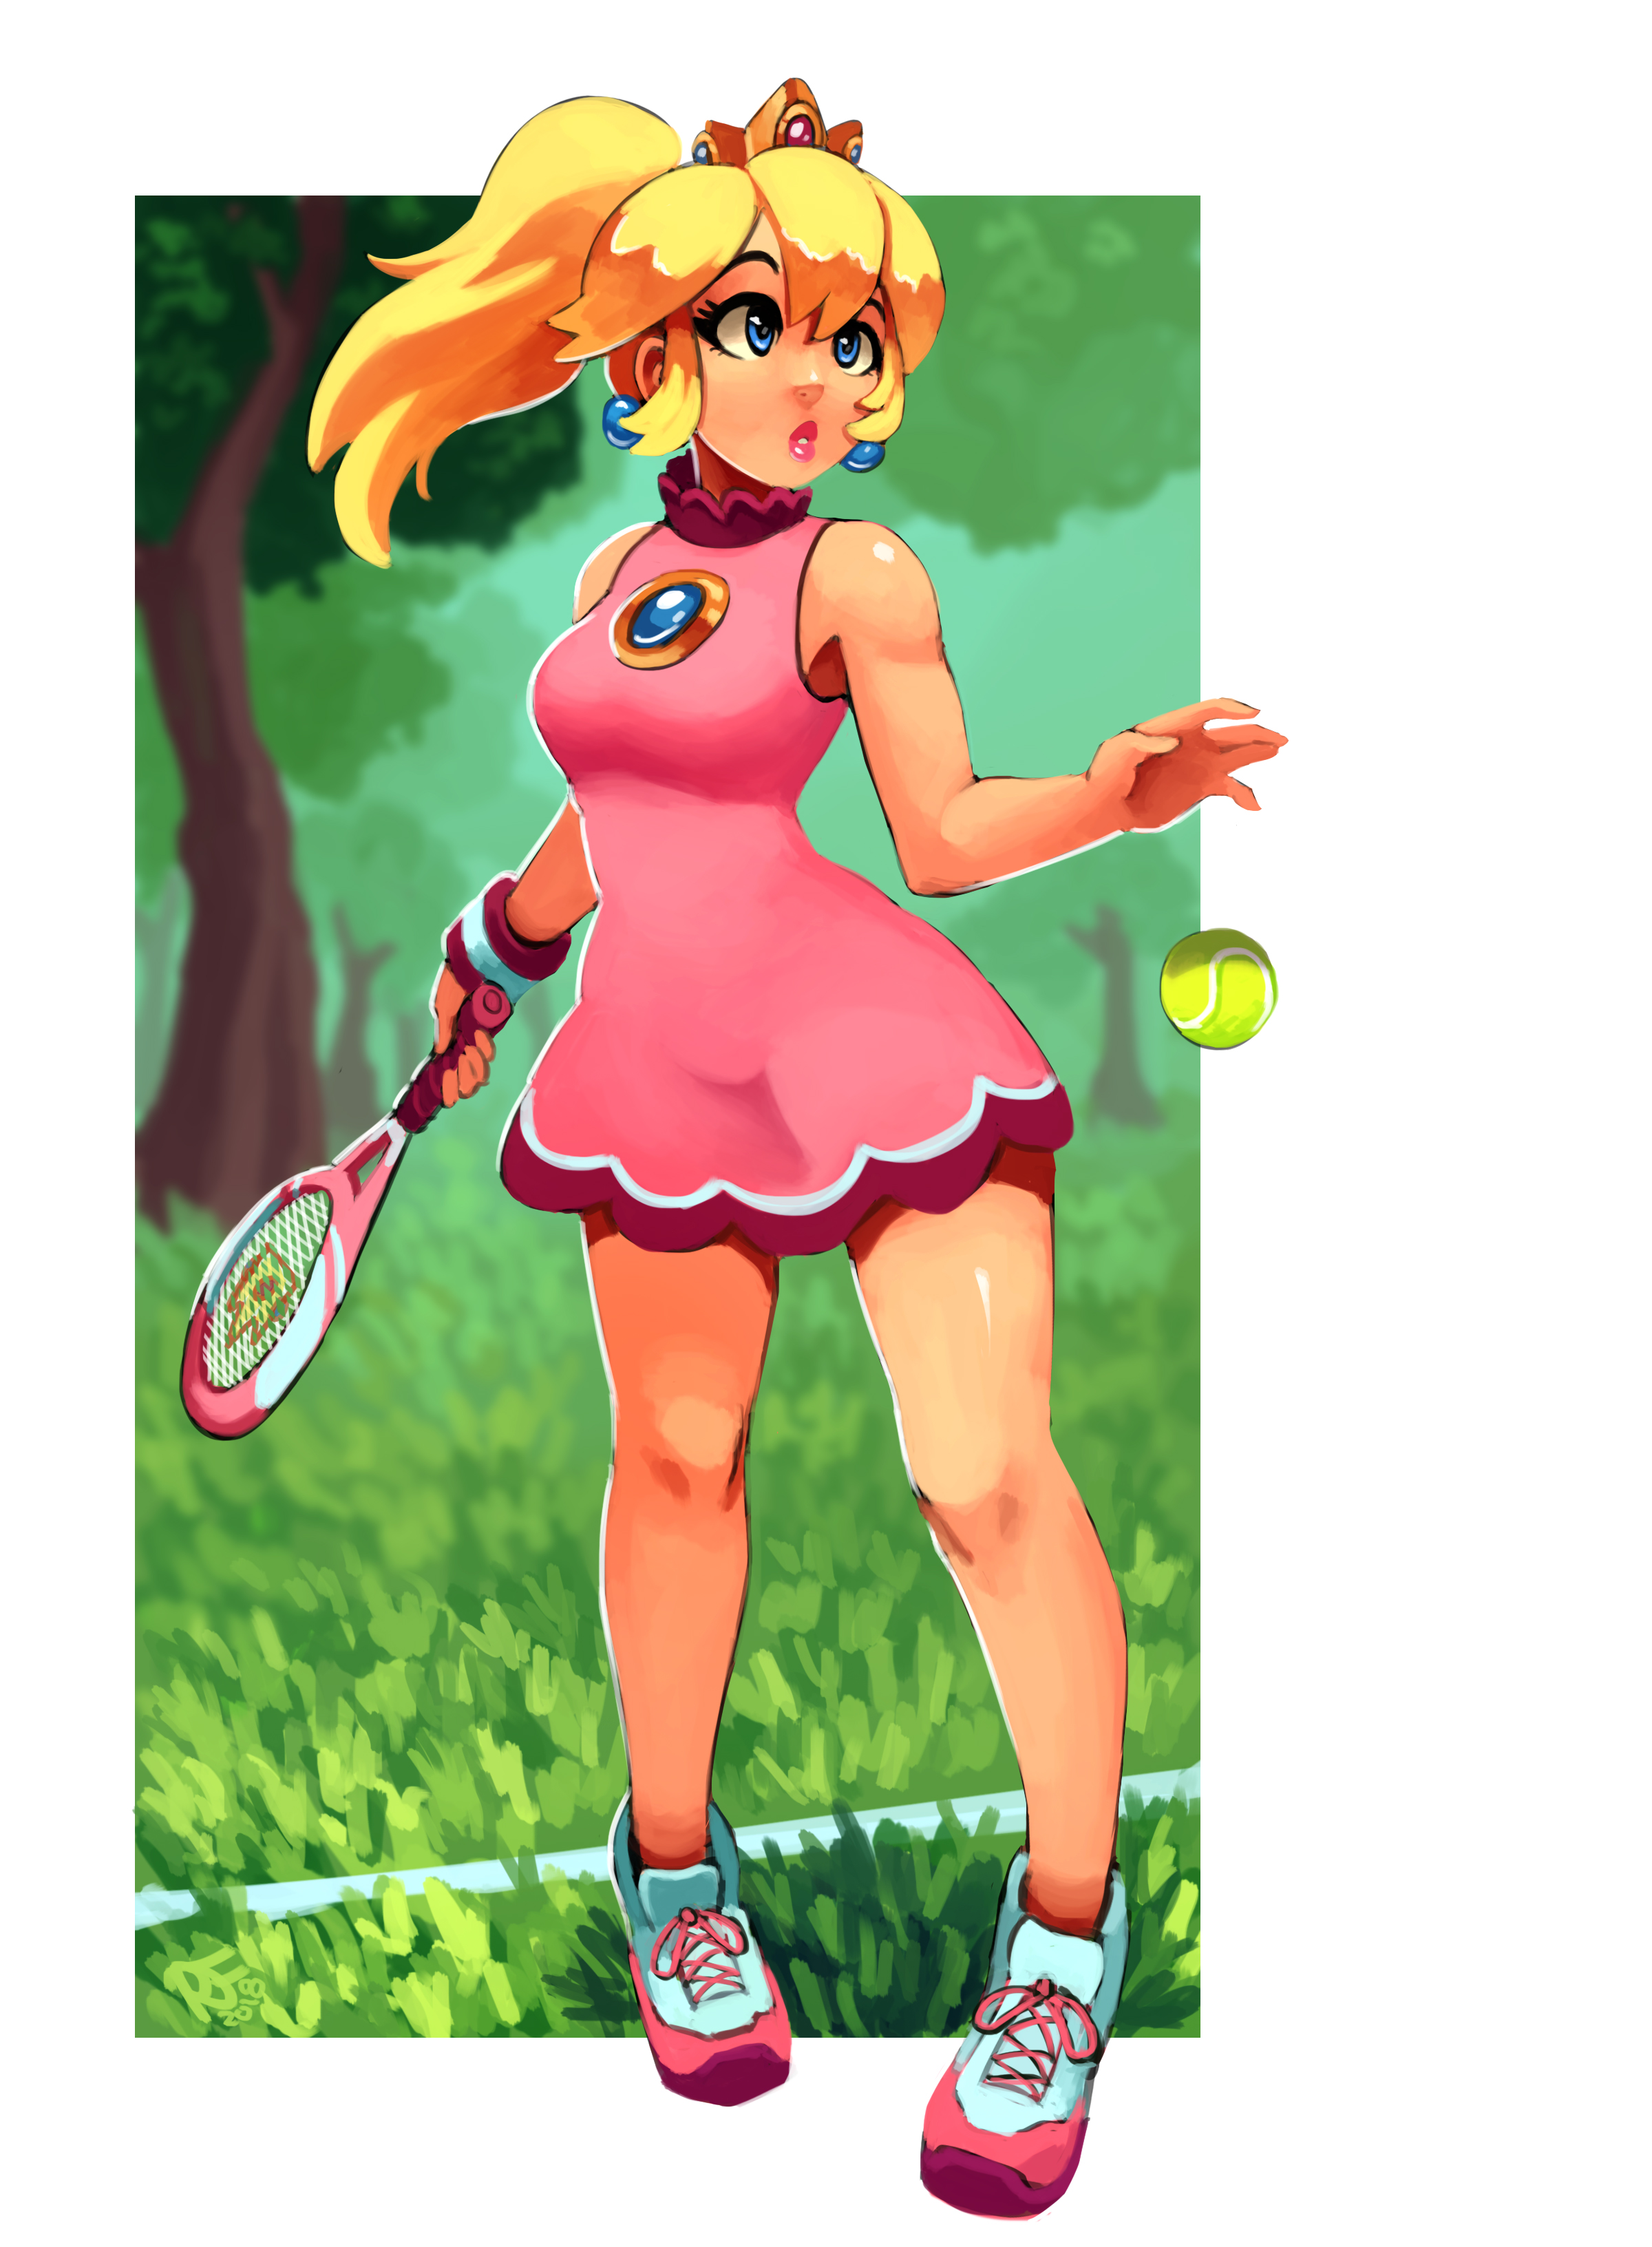 Ravenousruss Princess Peach Tennis Peach Mario Series Mario Tennis Mario Tennis Aces